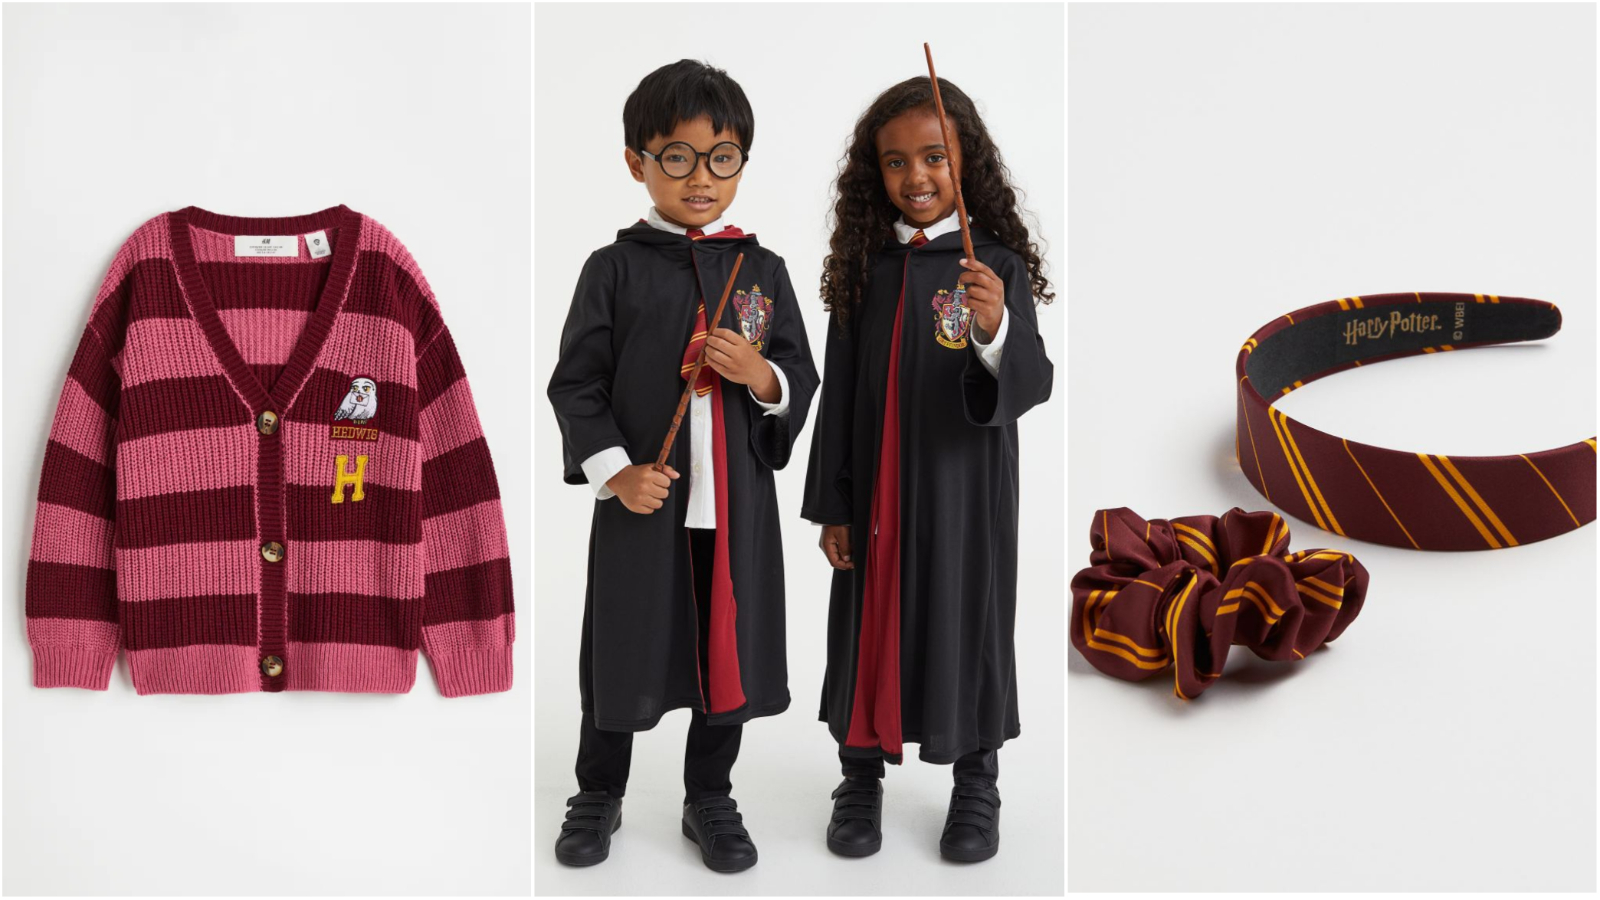 H&M Harry Potter kolekcija kojoj će se obradovati najmlađi